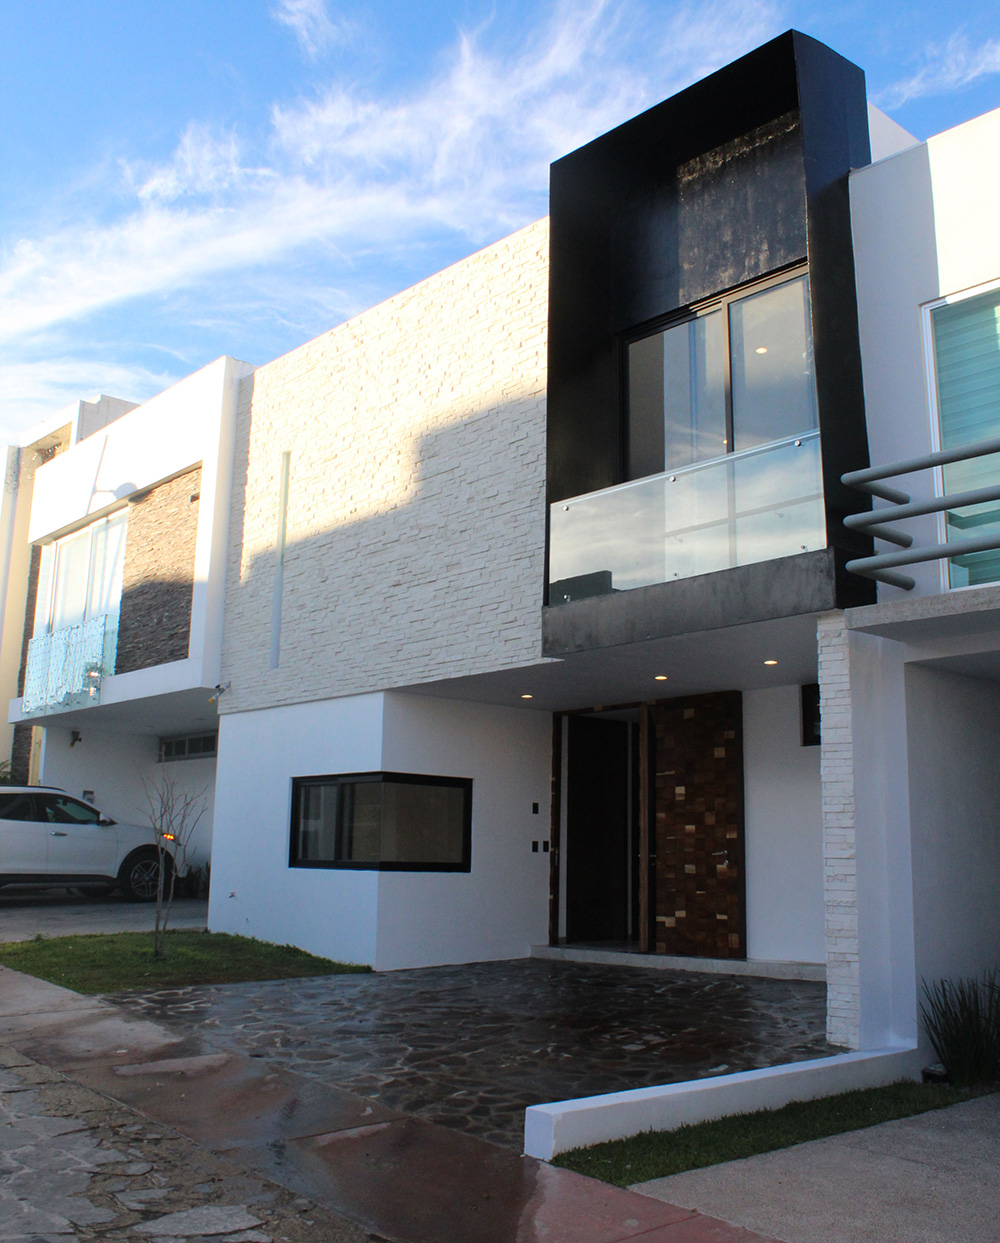 Foto 1 - Casa Vasanta 95 - SG Arquitectura